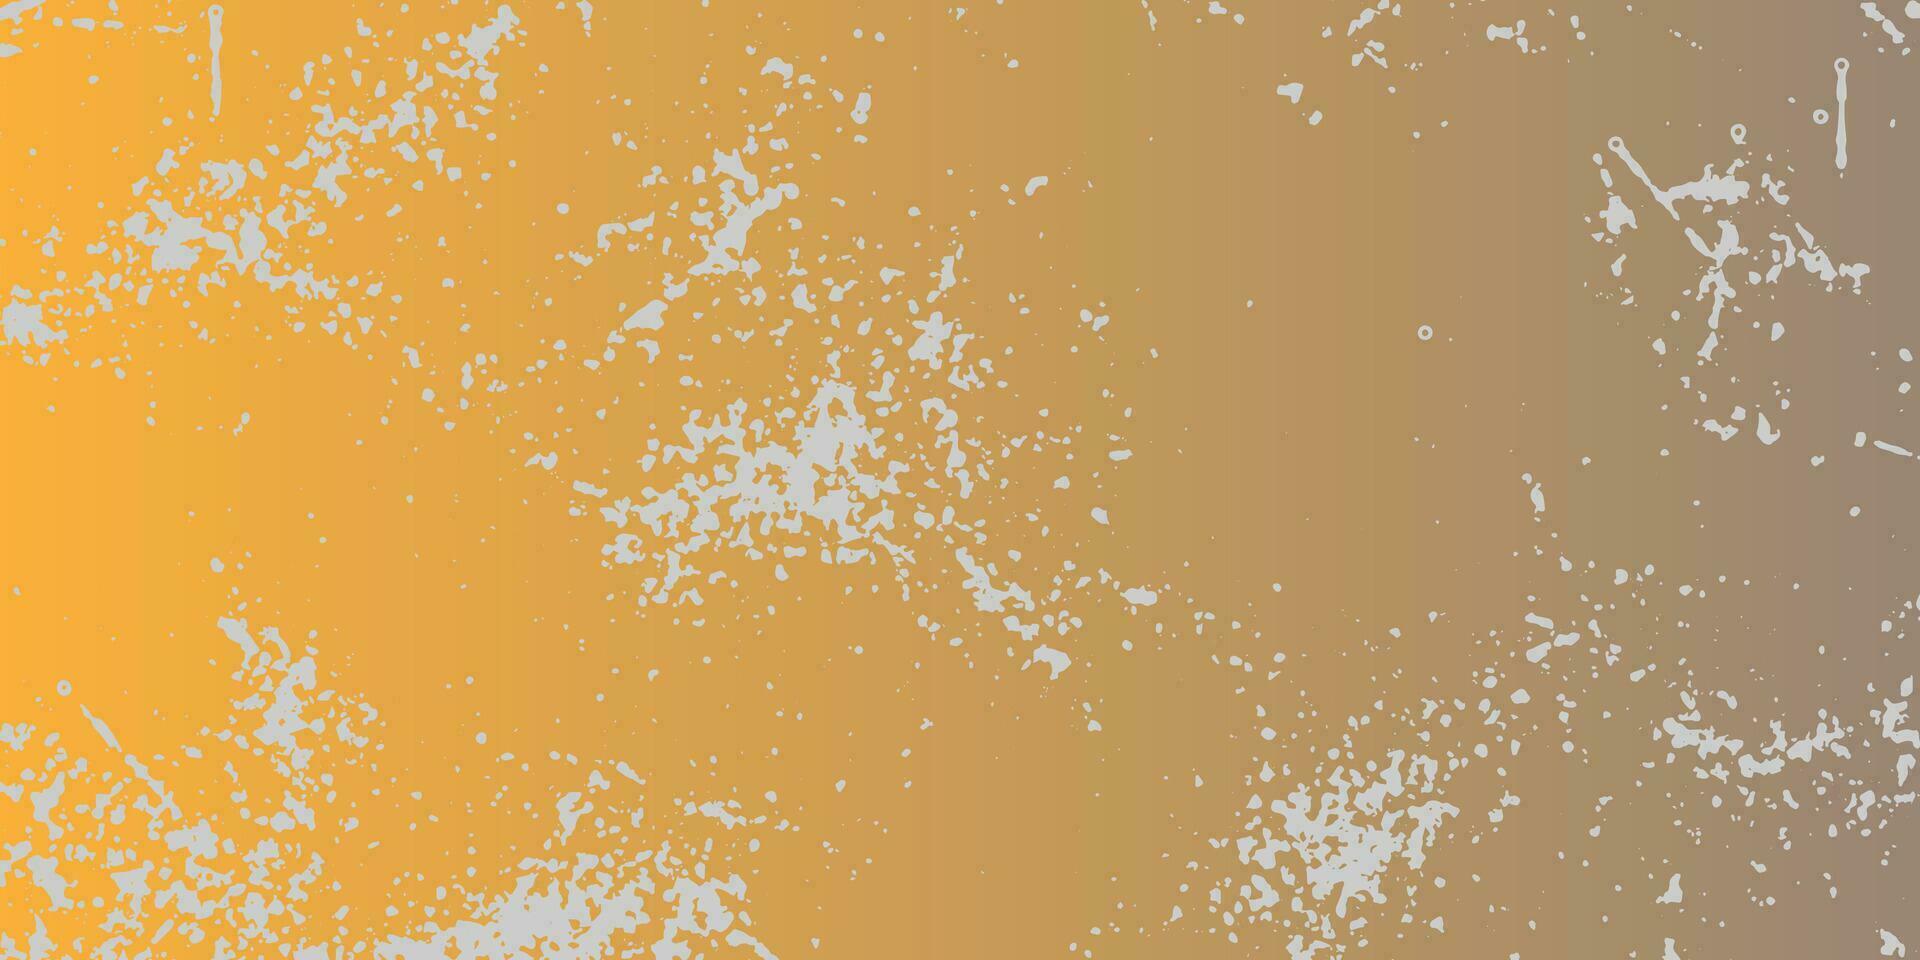 en grunge bakgrund med gul och orange måla vektor